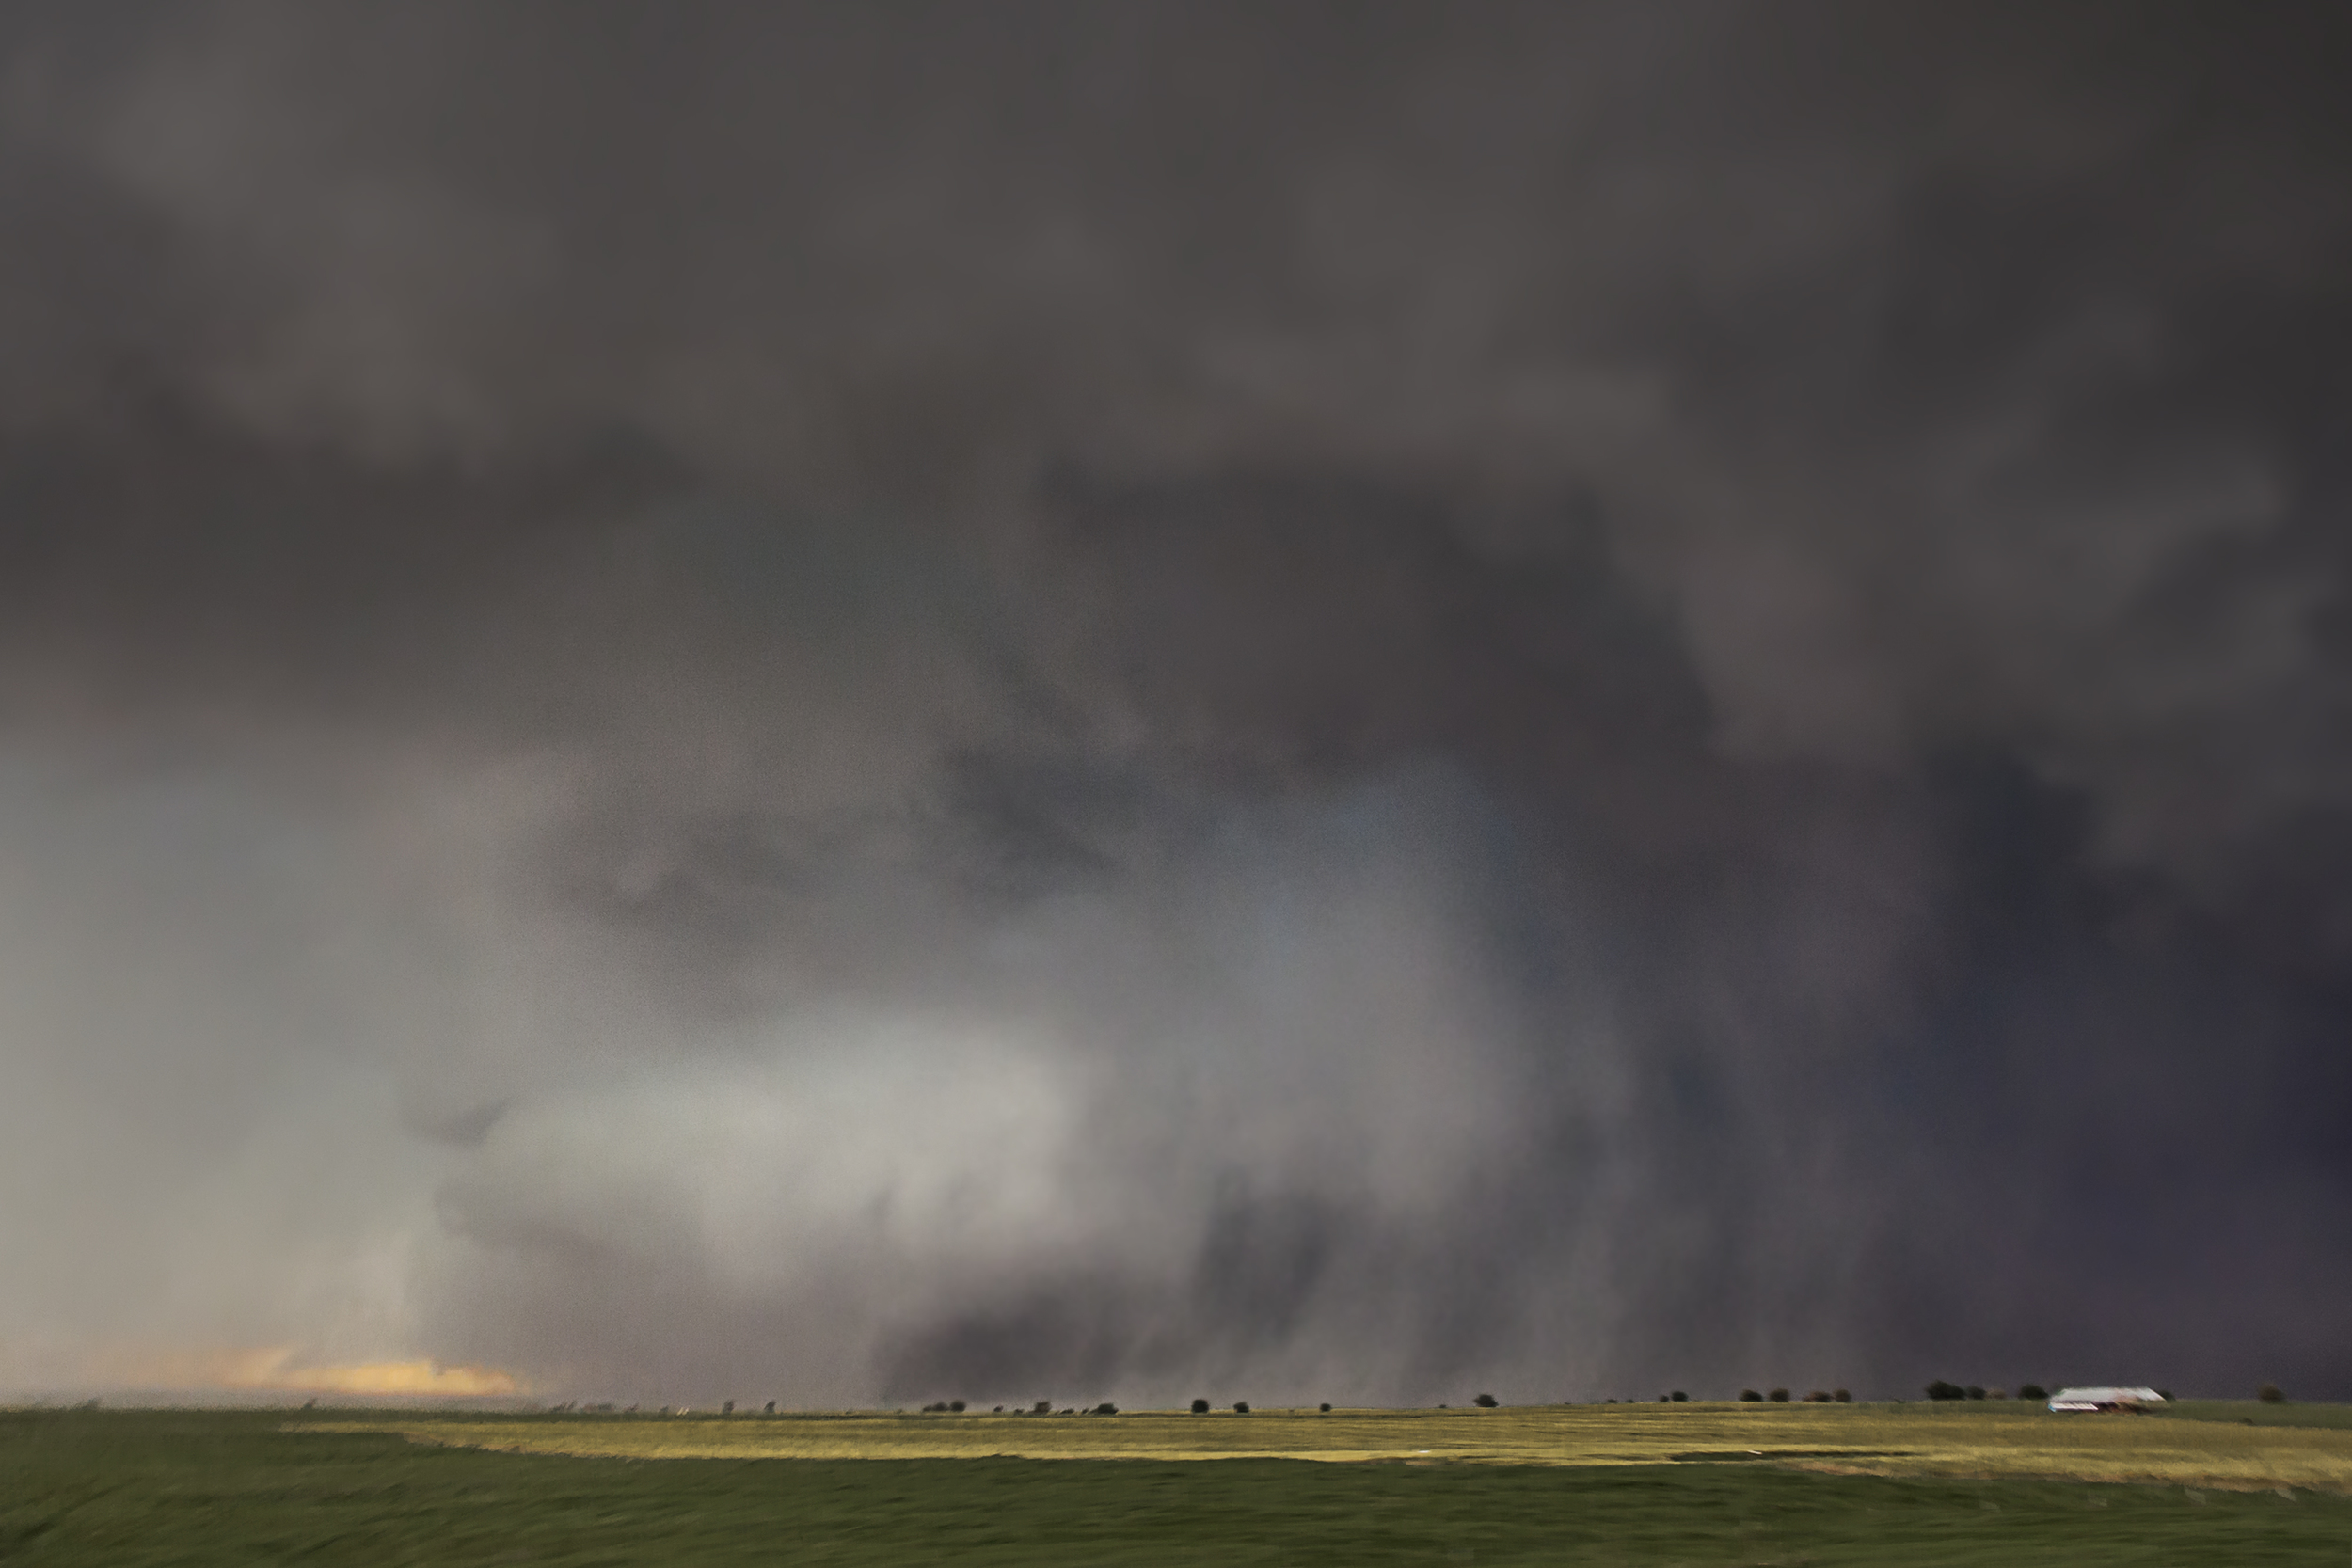  Widest tornado in US History. May 31, 2013 in El Reno, Oklahoma 